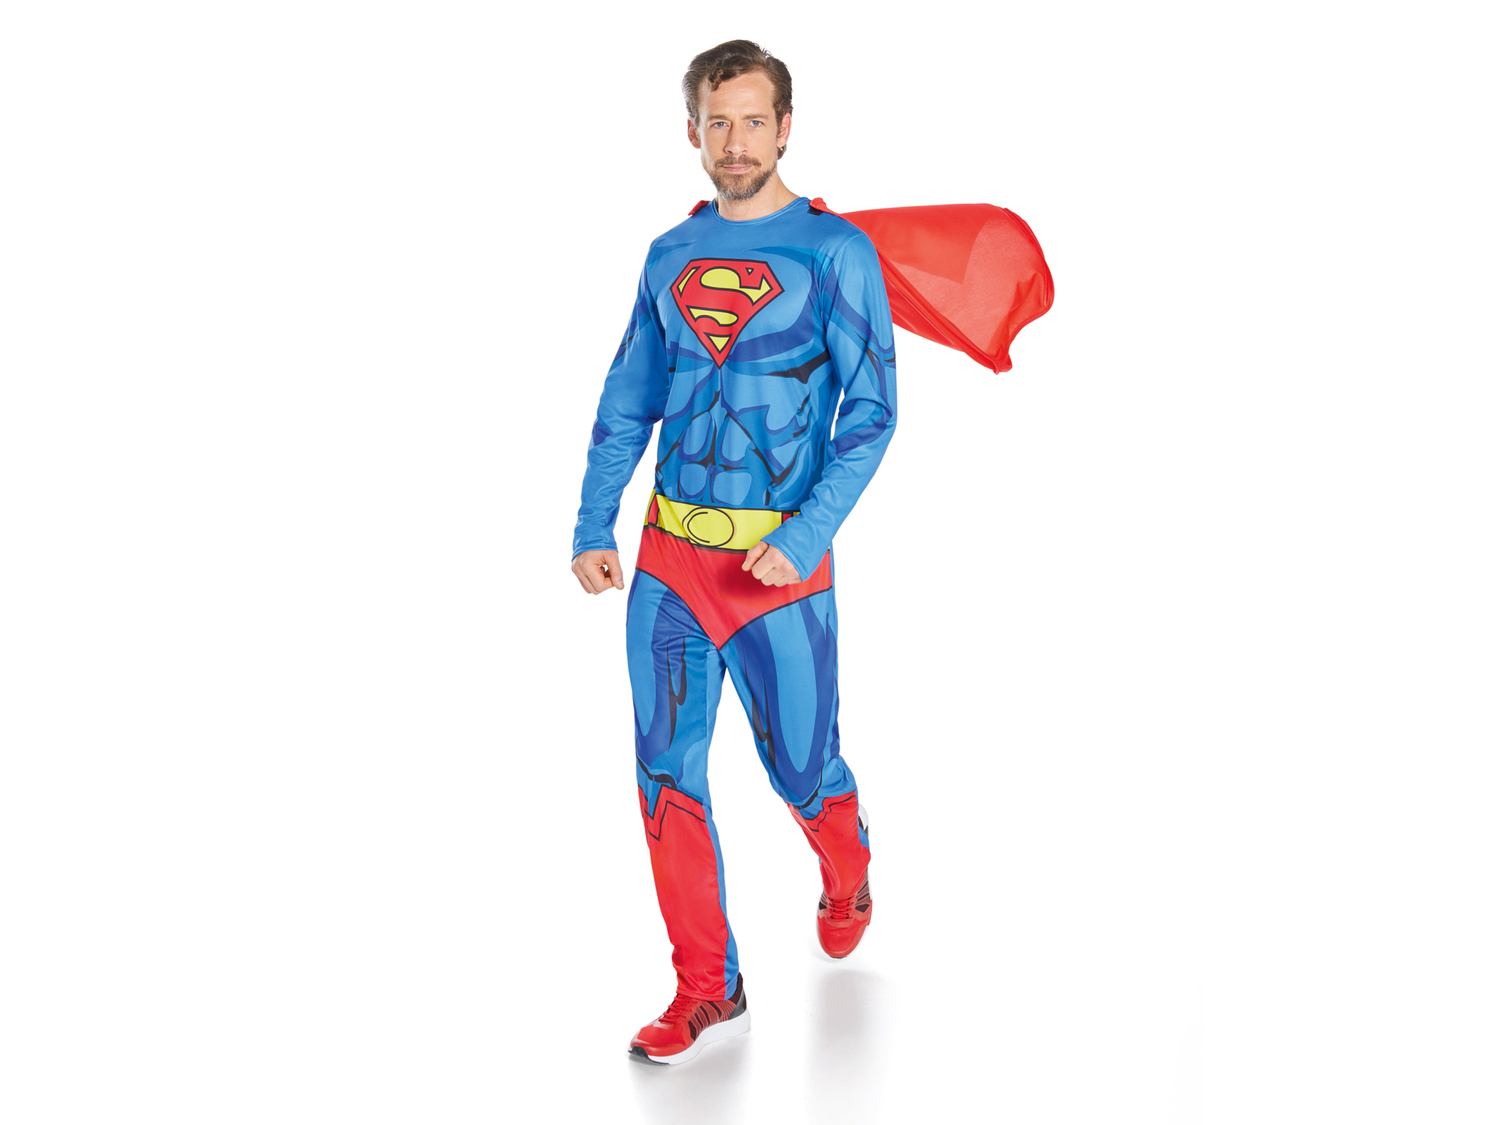 Costume di carnevale da uomo Superman, prezzo 12.99 &#8364; 
Misure: M-L
Taglie ...